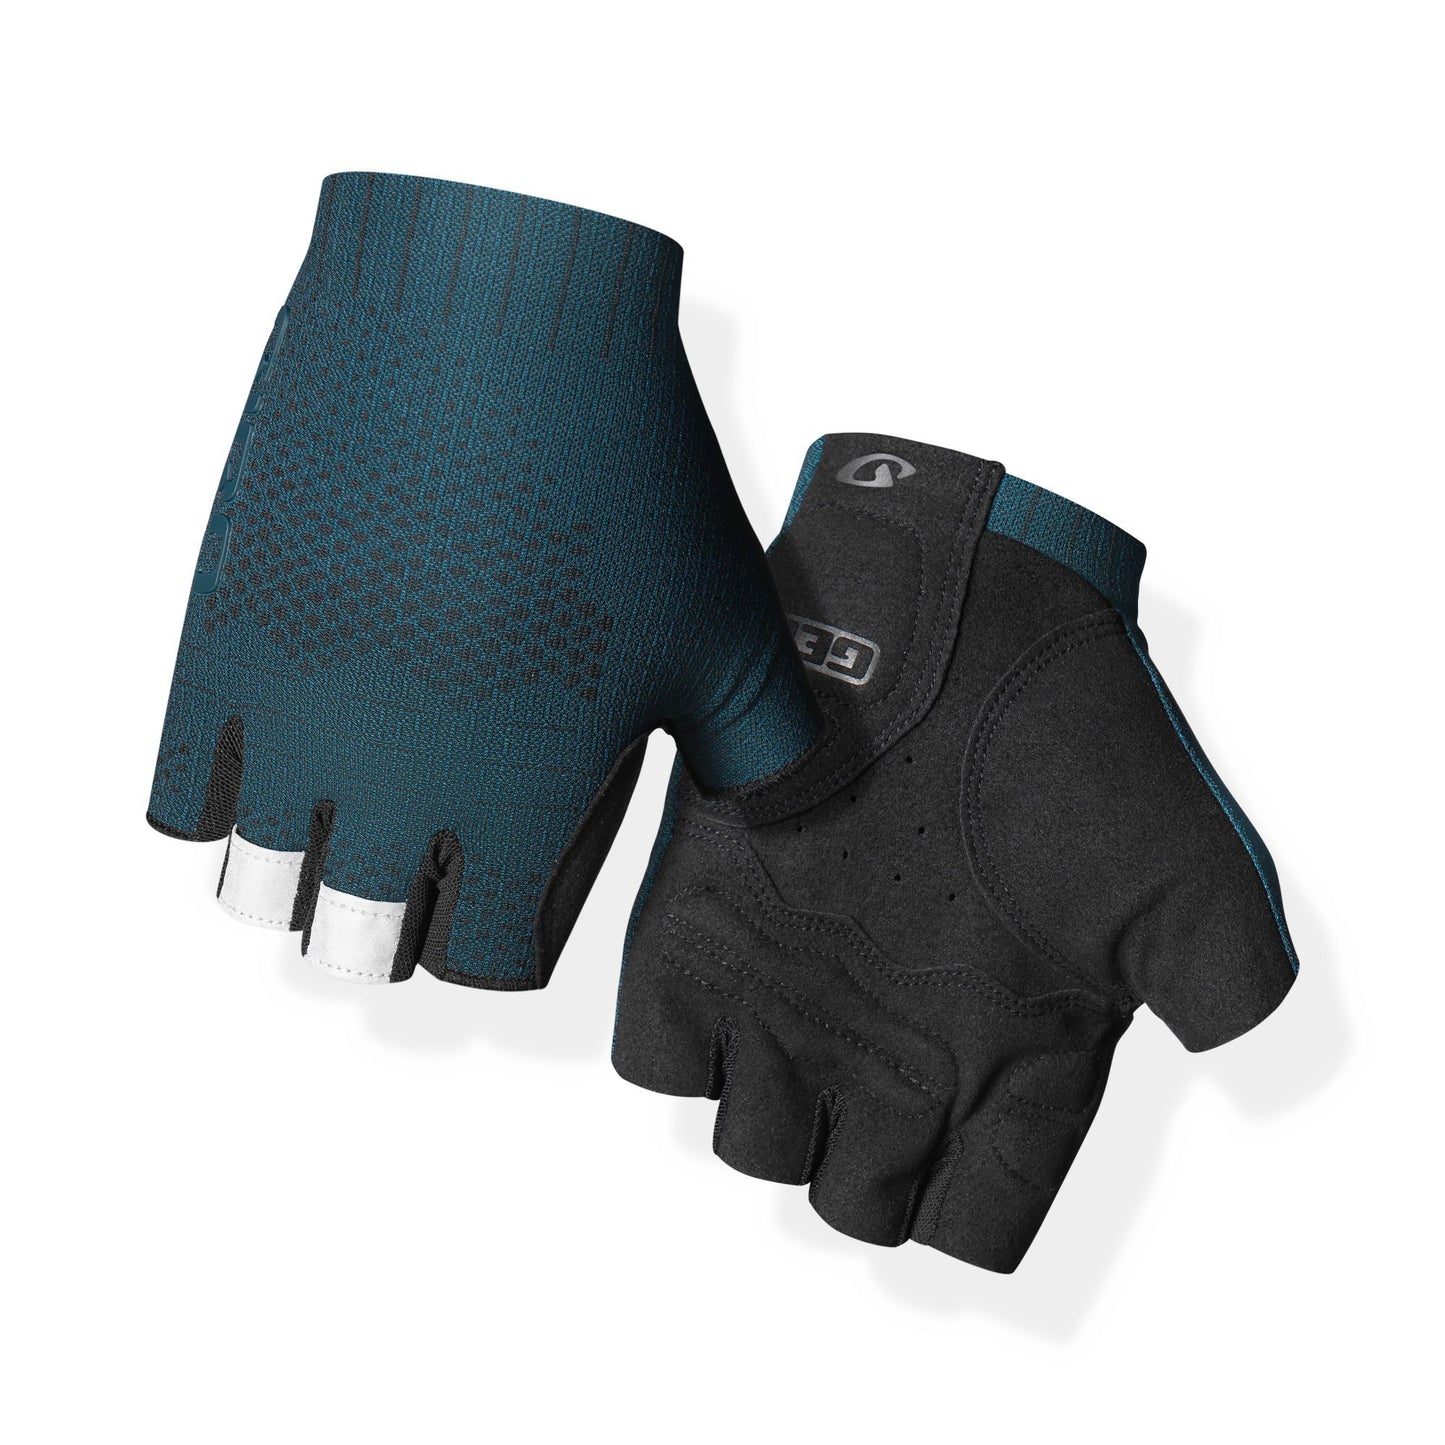 Giro Men's Xnetic Road Glove Harbor Blue Bike Gloves